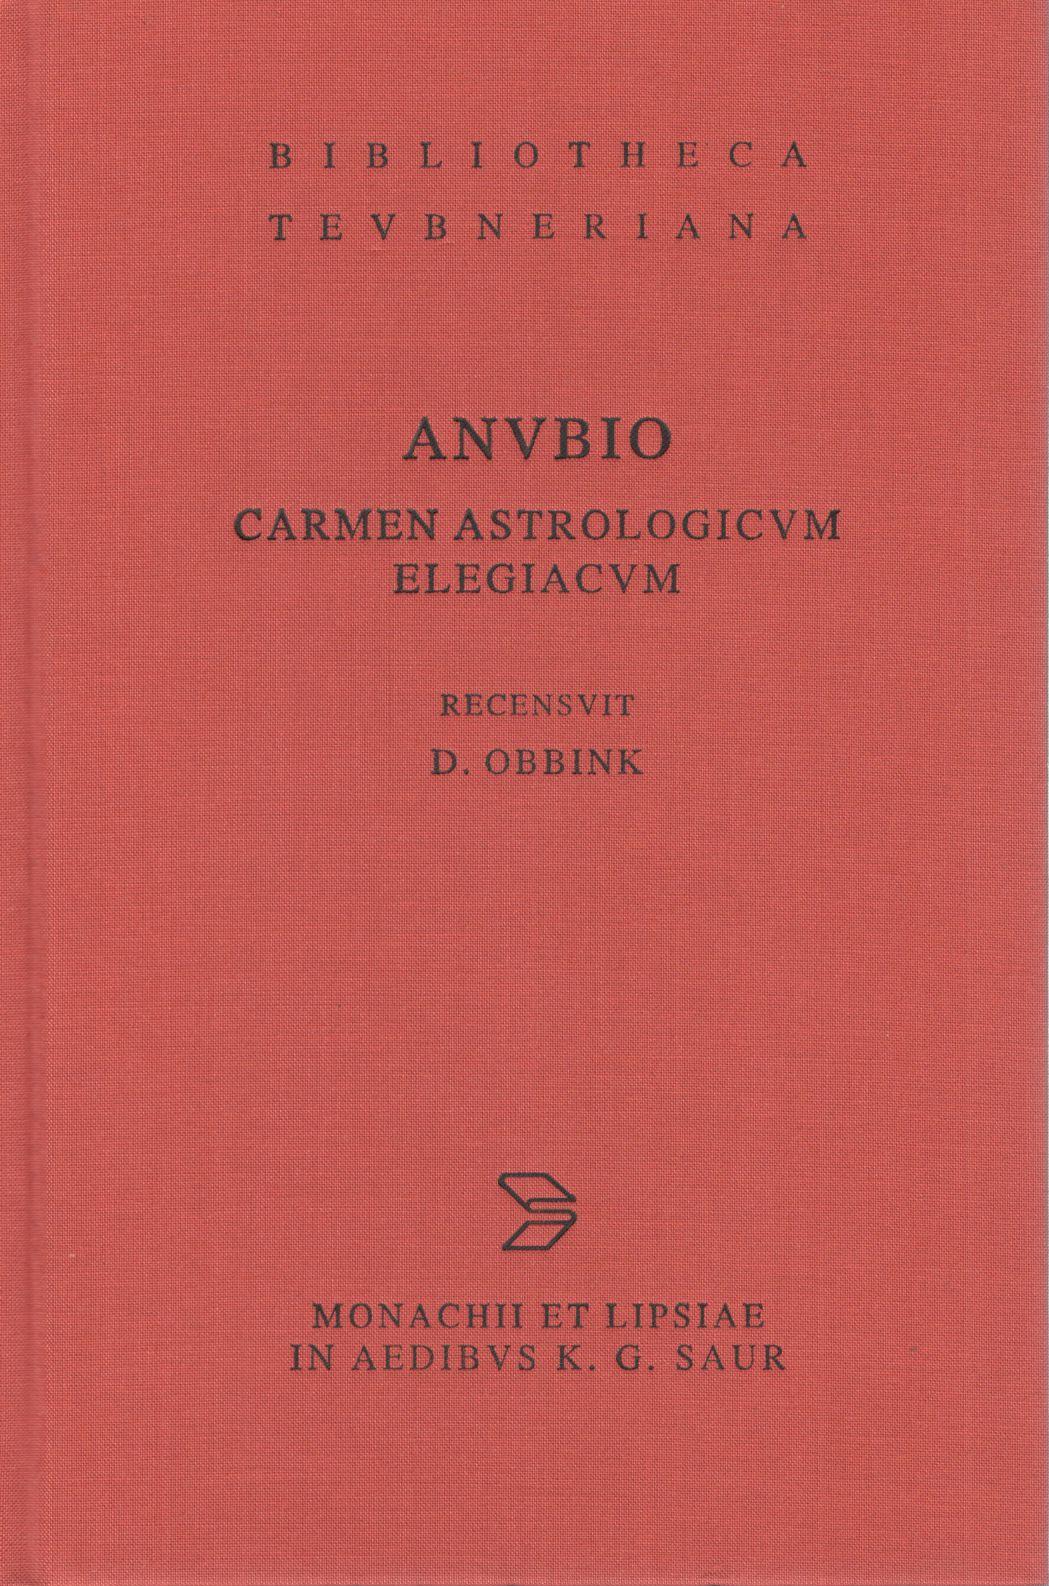 ANUBIO CARMEN ASTROLOGICUM ELEGIACUM